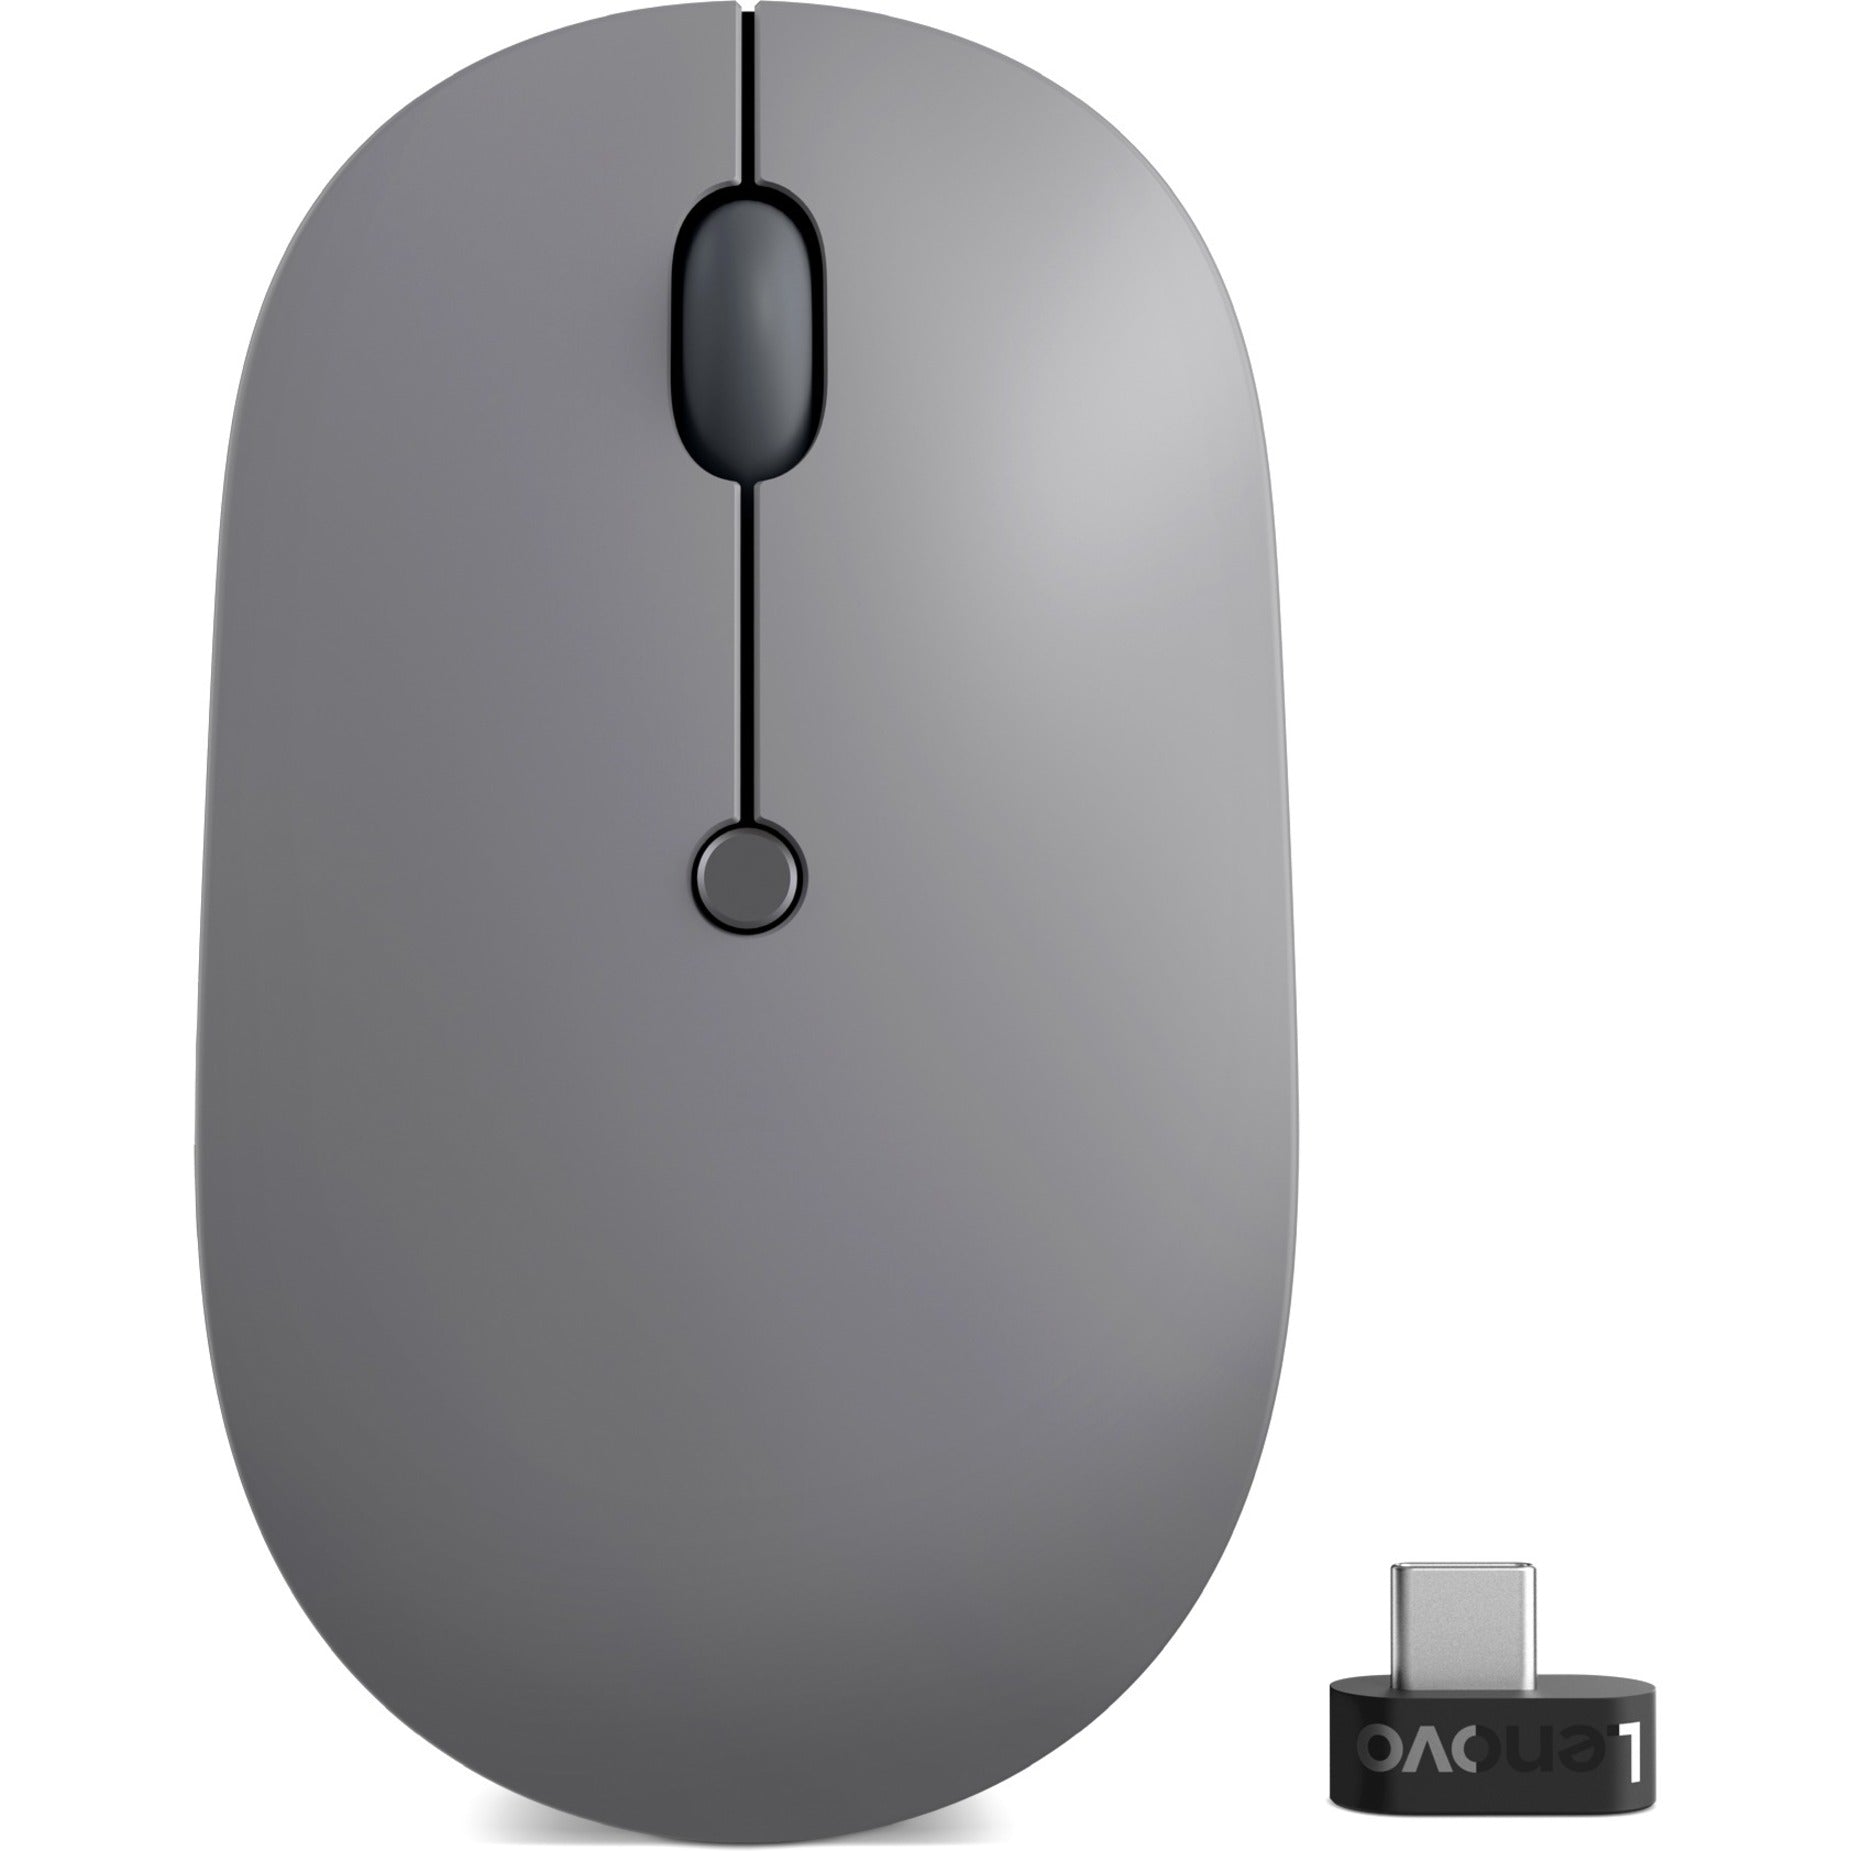 Lenovo 4Y51C21216 Go USB-C Wireless Mouse - Storm Grey Wiederaufladbar 4000 dpi 24 GHz